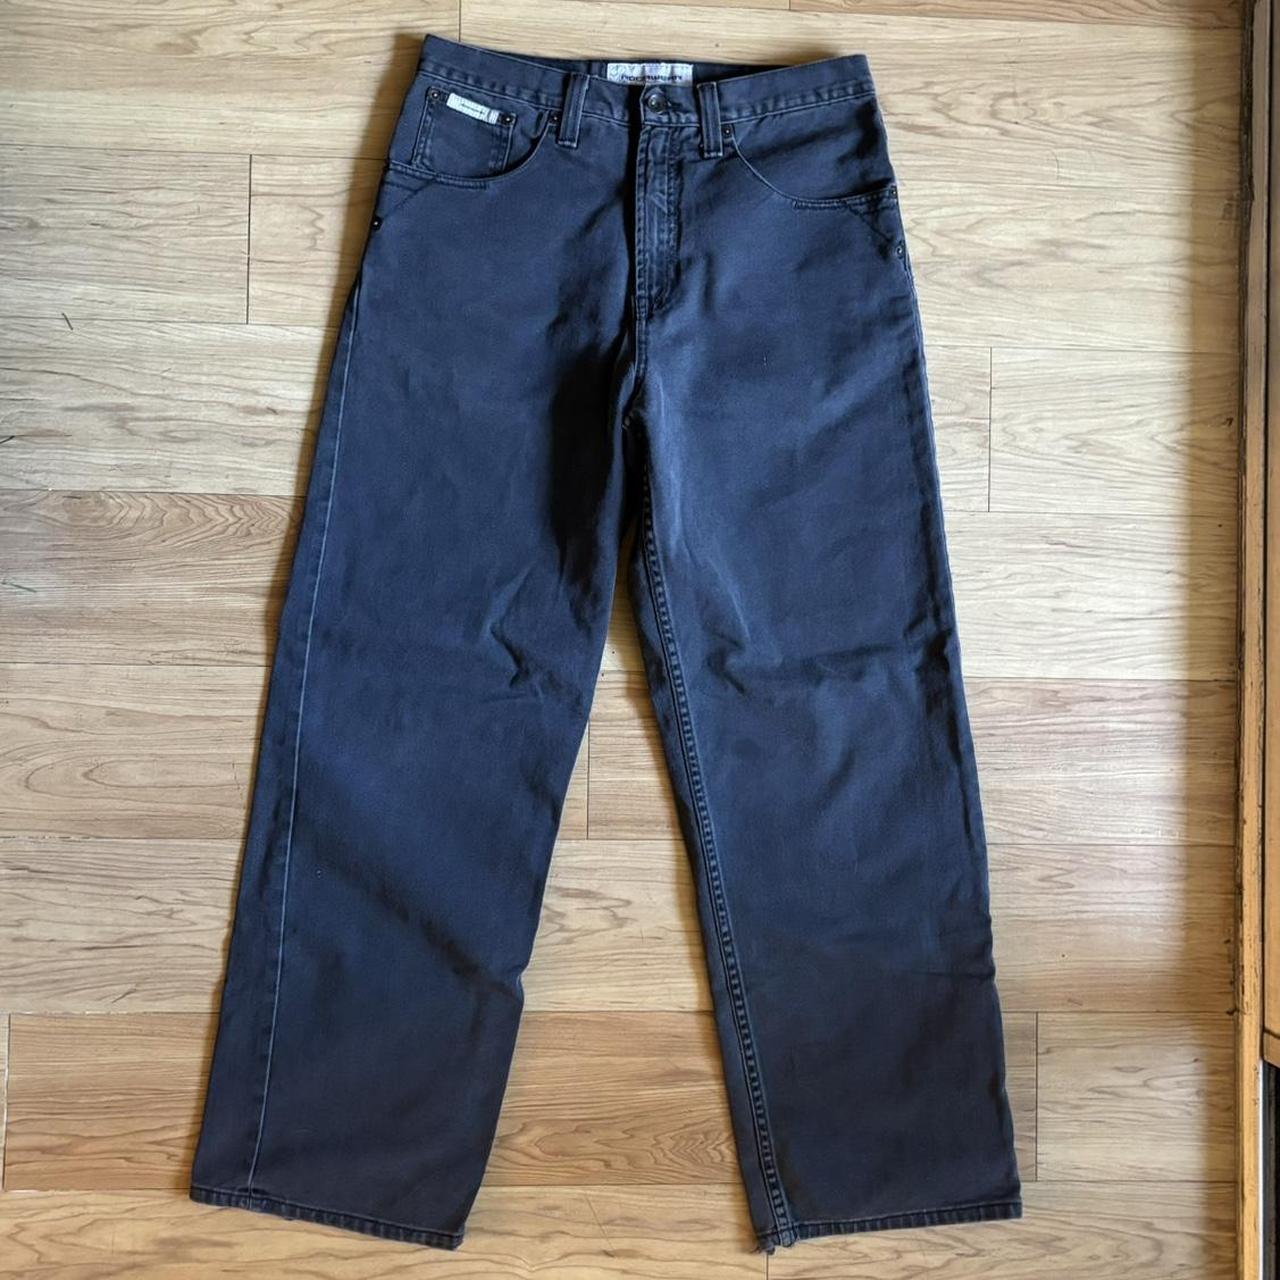 Black Baggy Rocawear Jeans Size 32x32 9.5in leg... - Depop